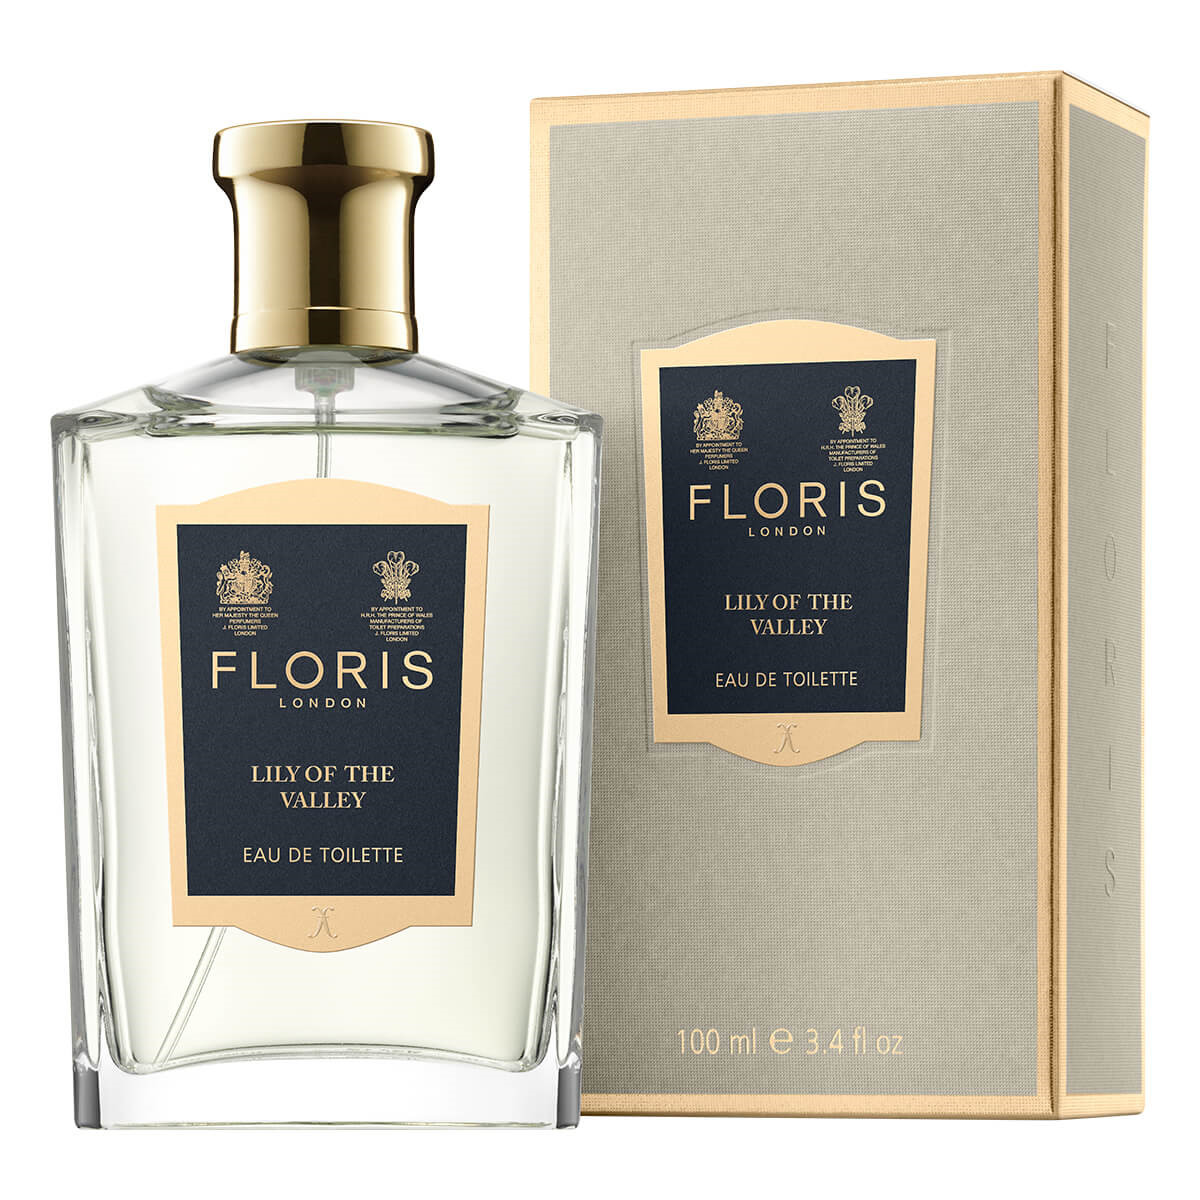 Floris Lily of the Valley, Eau de Toilette, 100 ml.